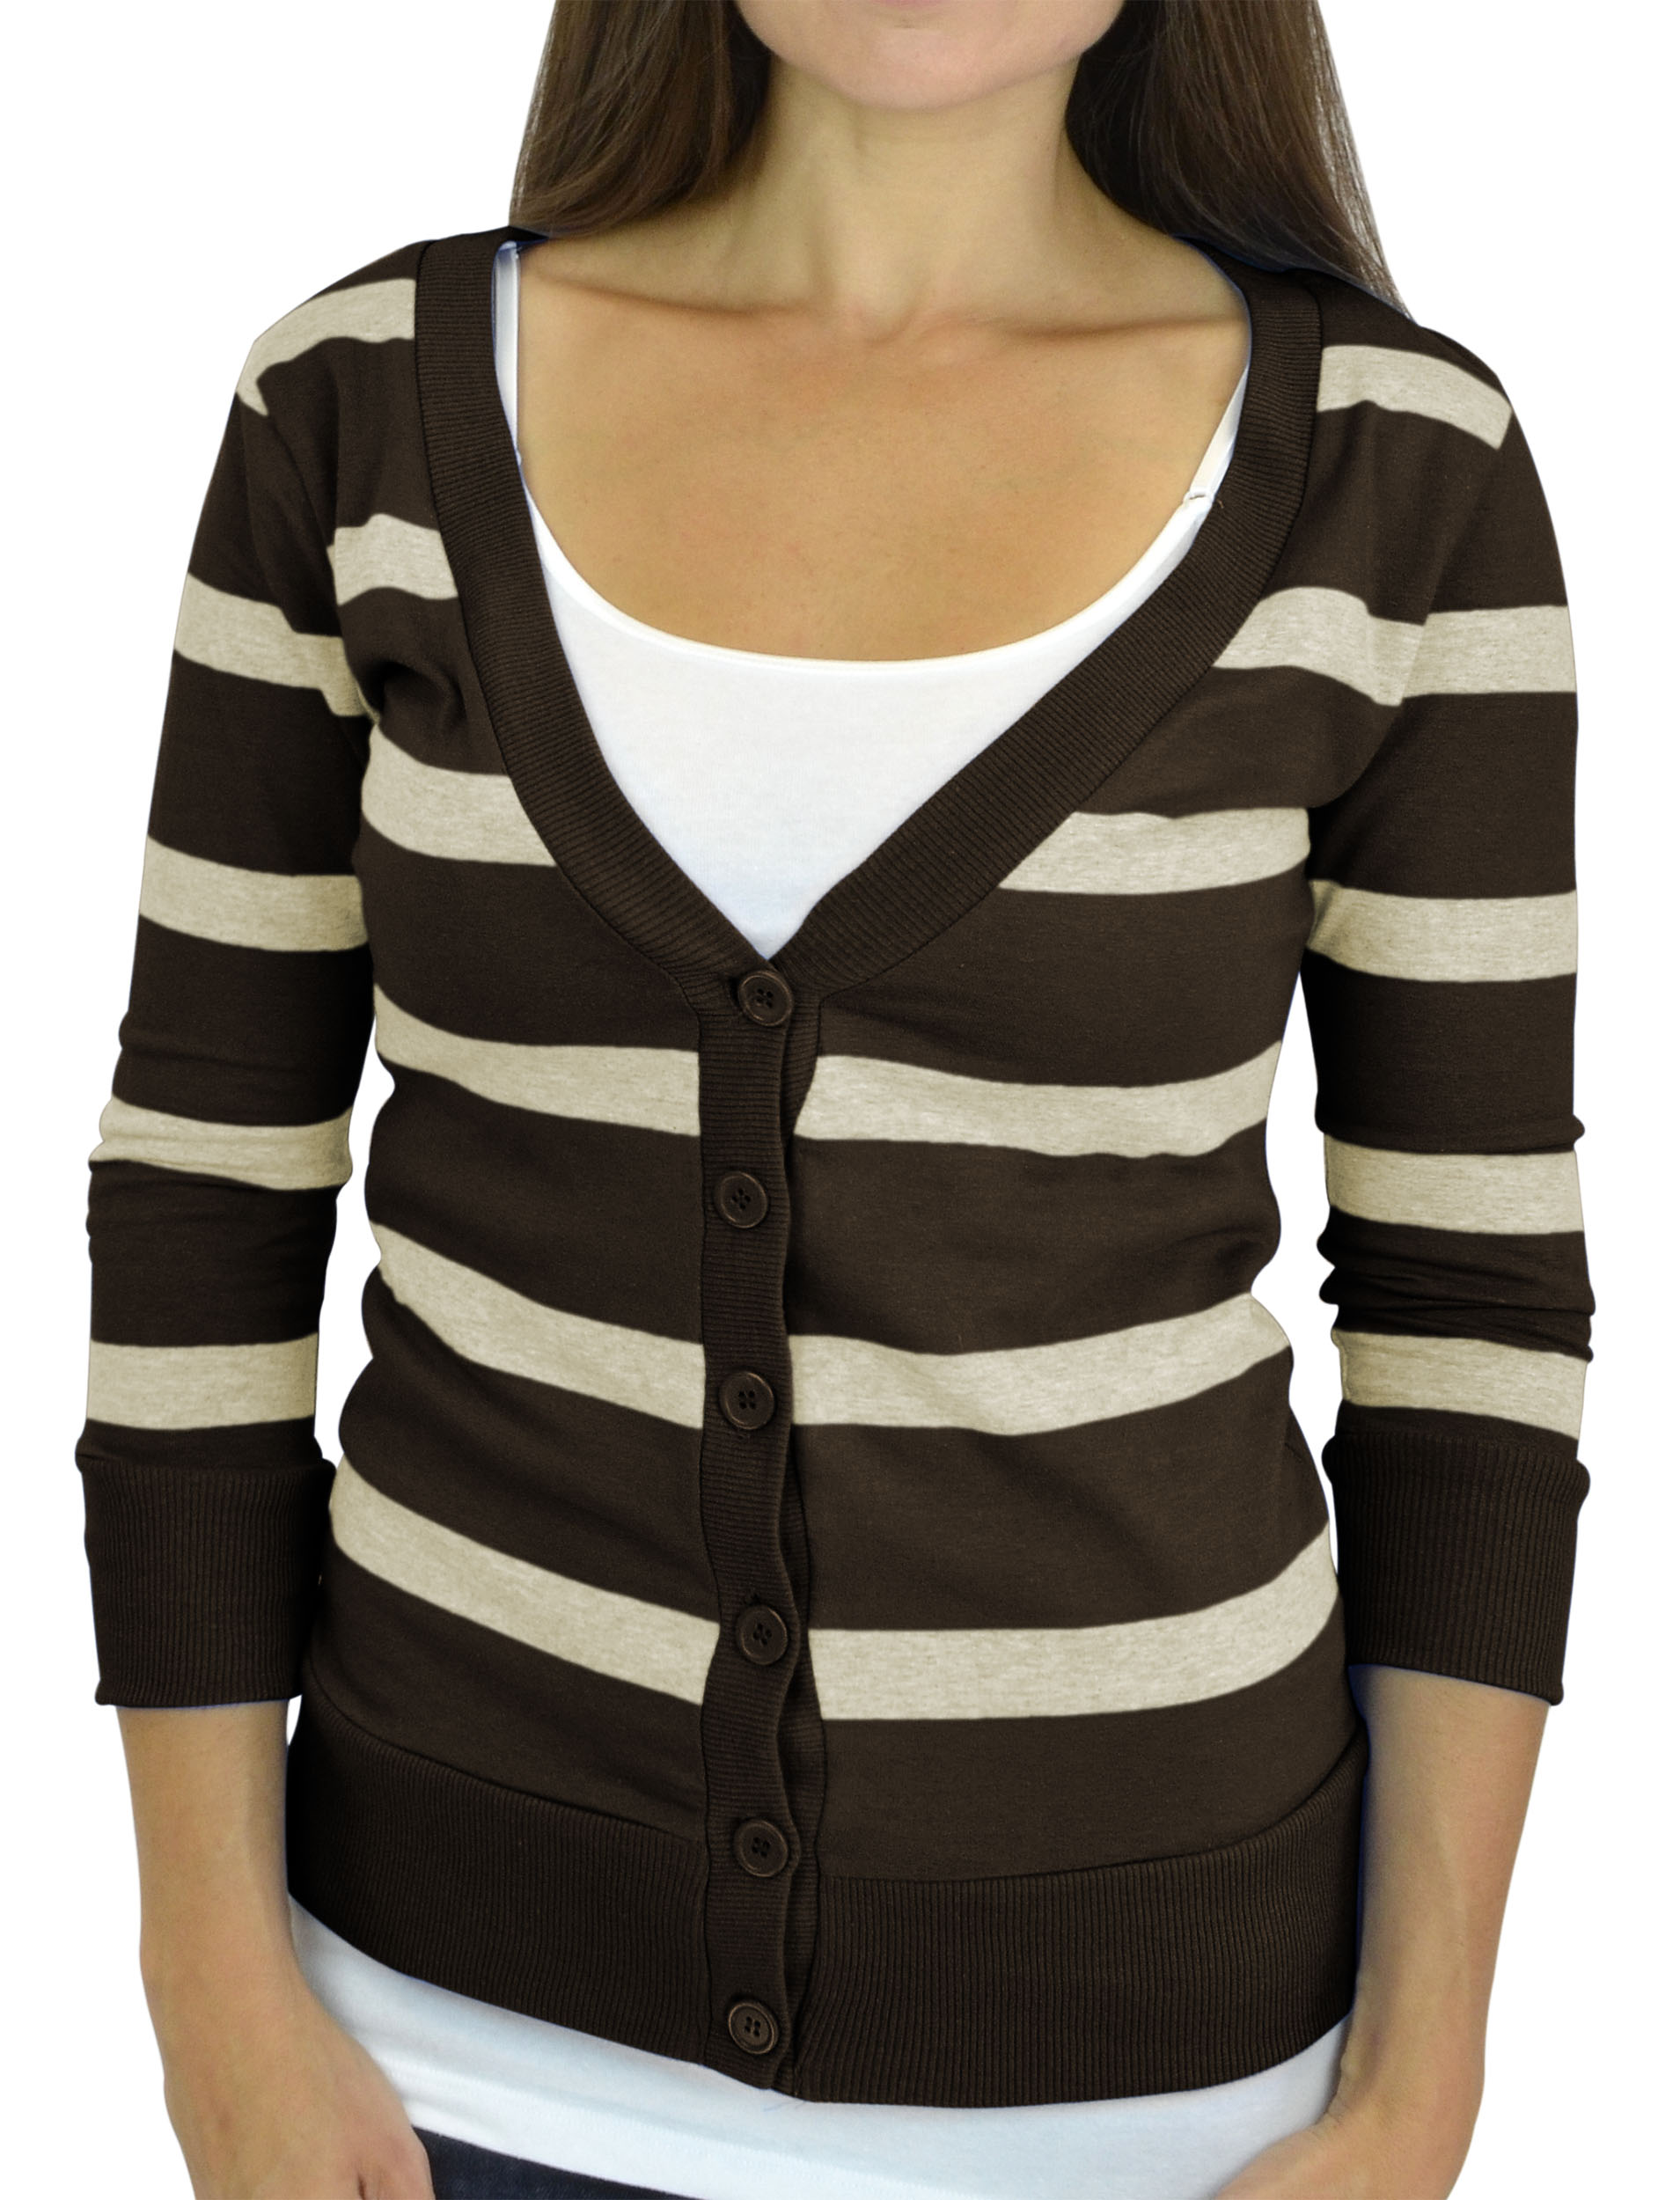 Belle Donne - Women / Girl Junior Size Soft 3/4 Sleeve V-Neck 6 Button Cardigans - Brown/Large